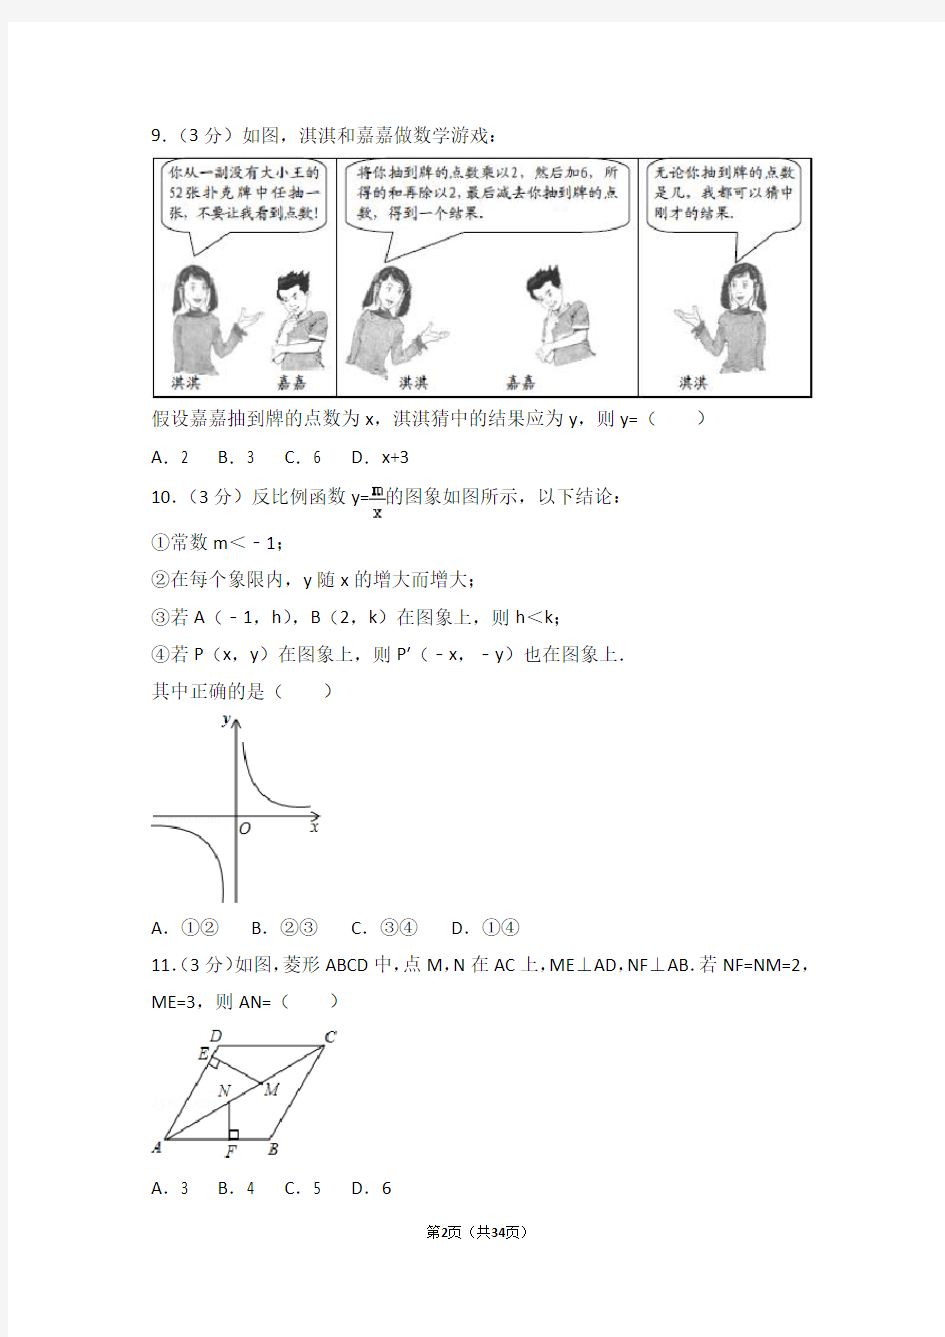 2013年河北省中考数学试卷及答案解析